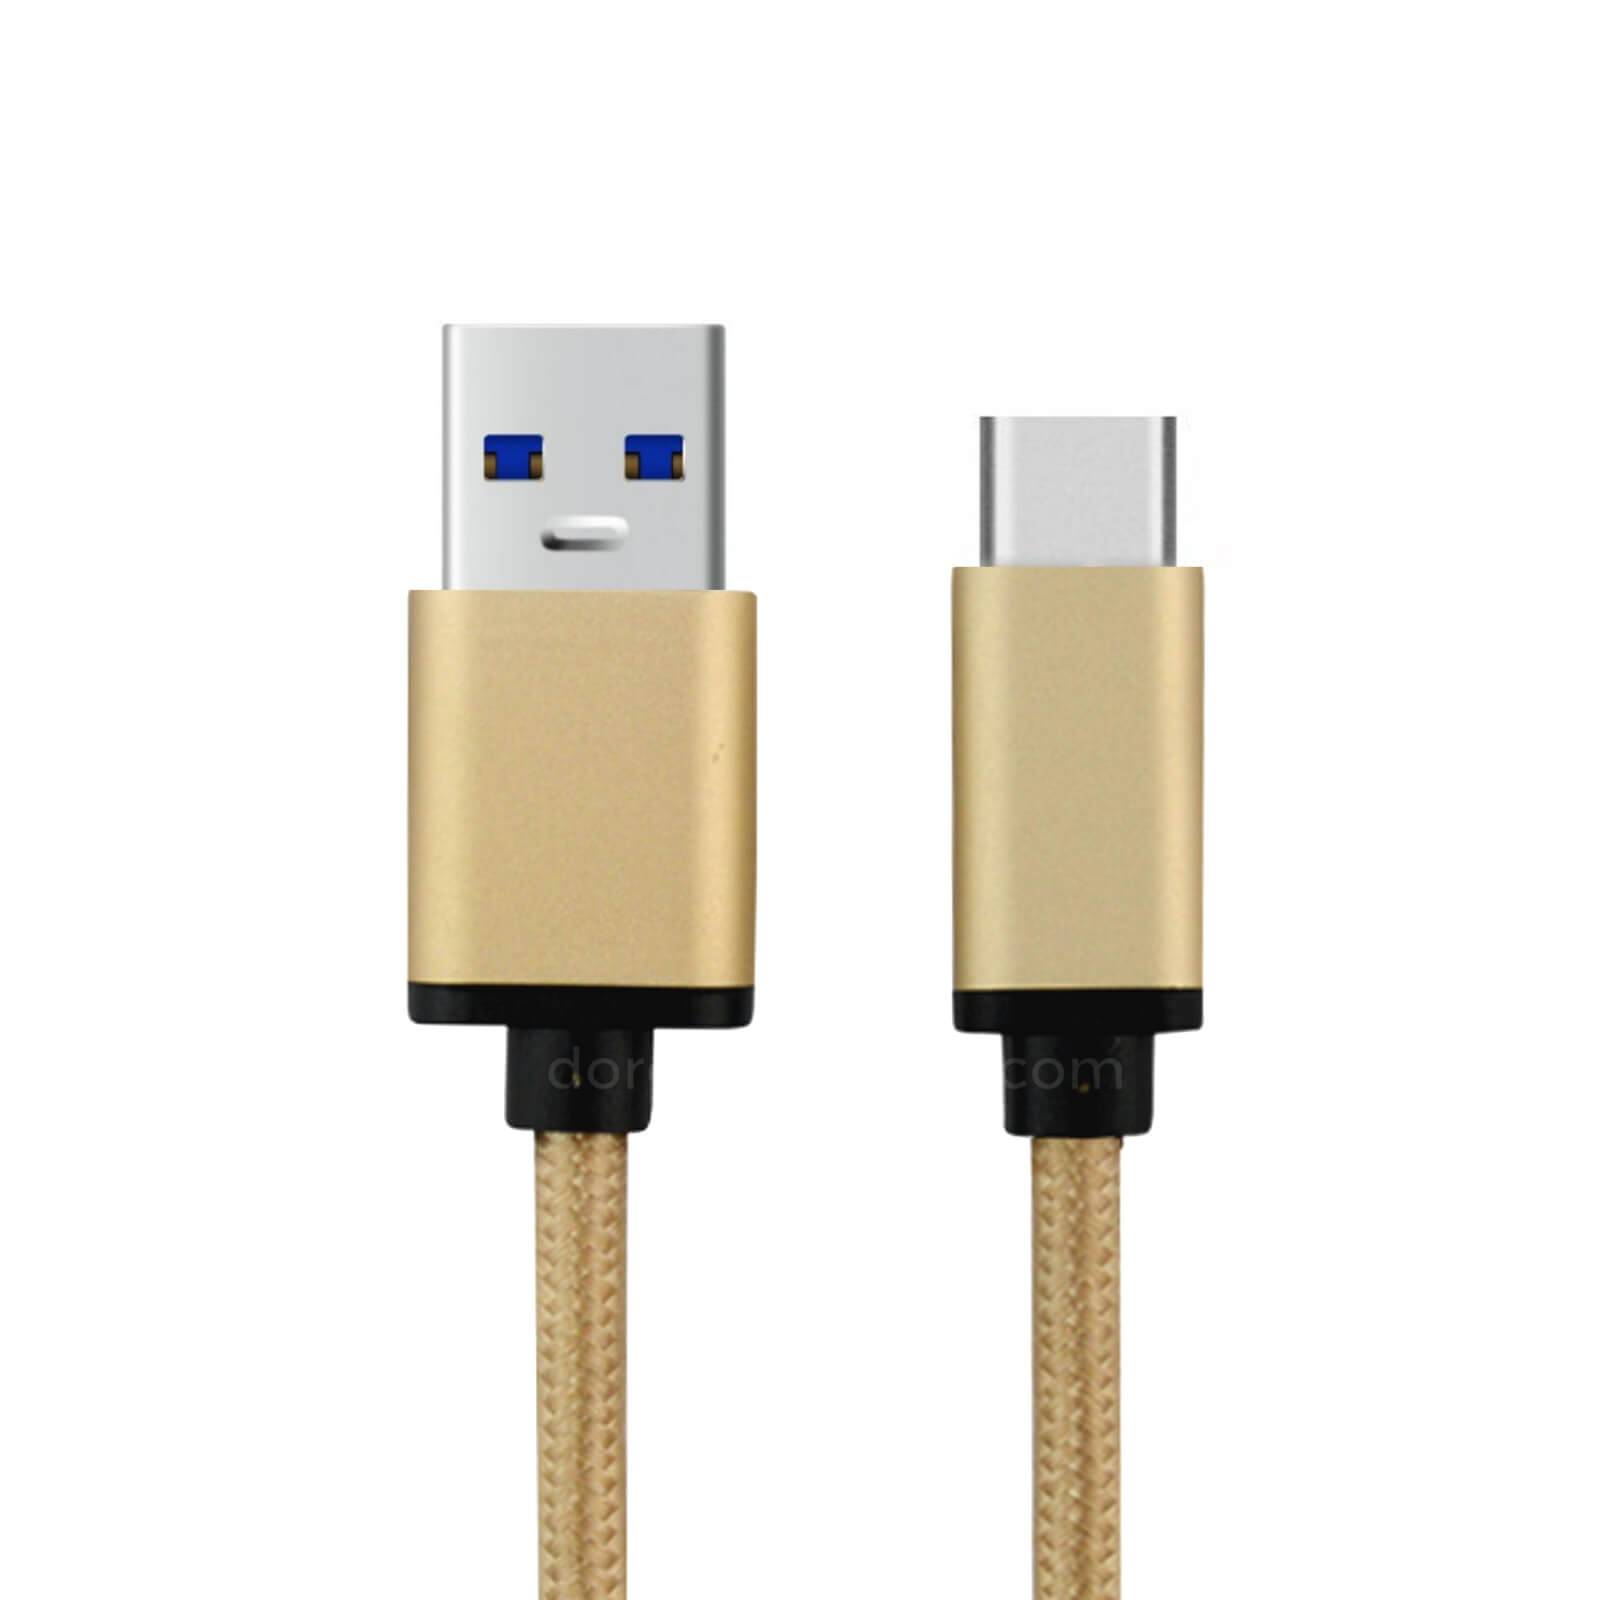 USB Type C-kabel Universal, för laddning av mobiltelefoner, surfplattor mm, 2 meter,